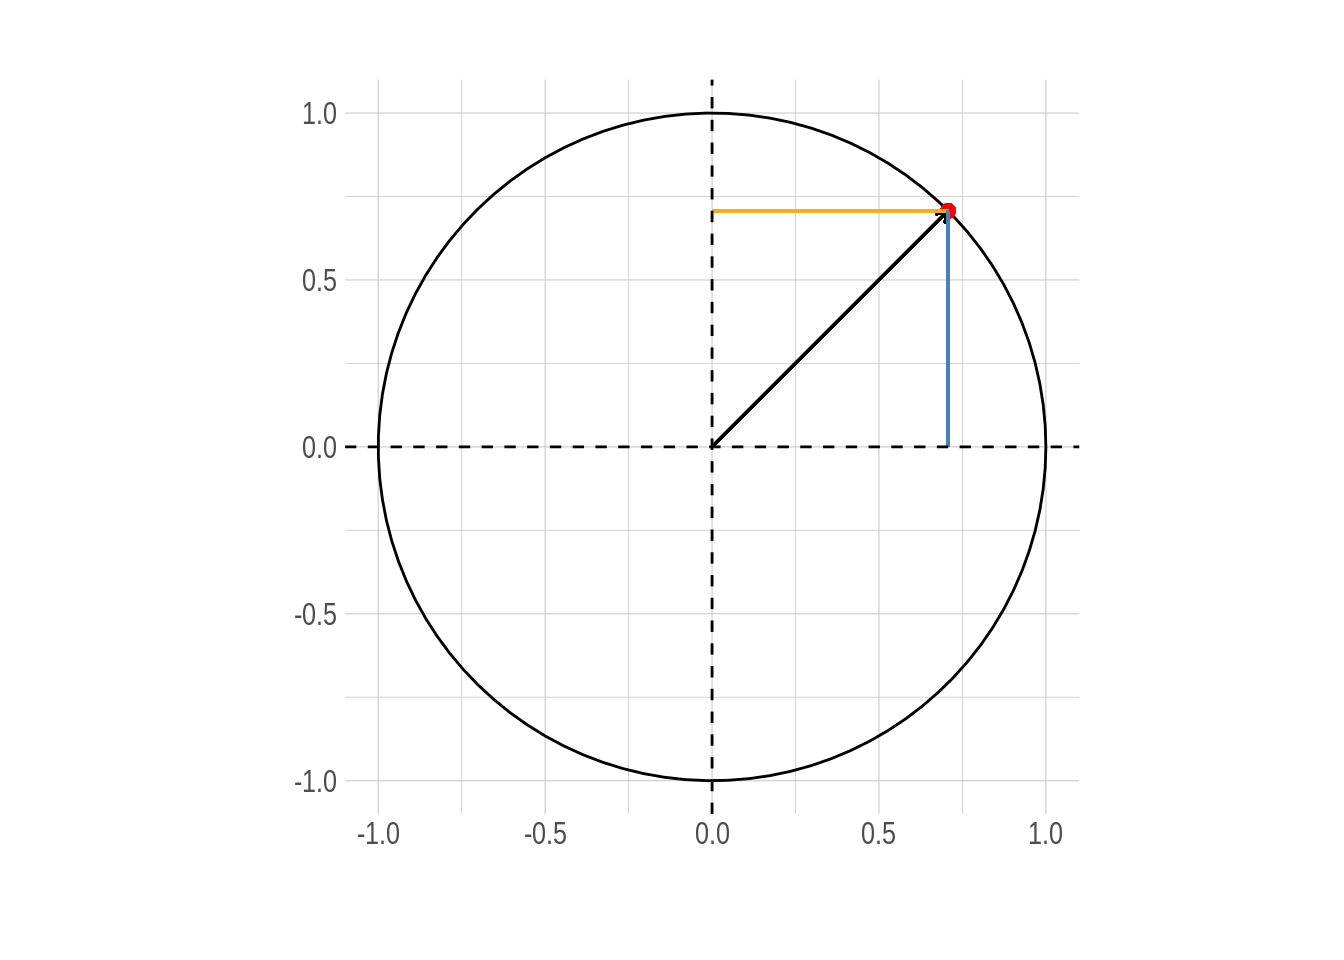 Circulo unitario. Las componentes de cualquier punto $(x,y)$ sobre la circunferencia representan el coseno y seno del ángulo $\theta$ que forma con la horizontal respectivamente